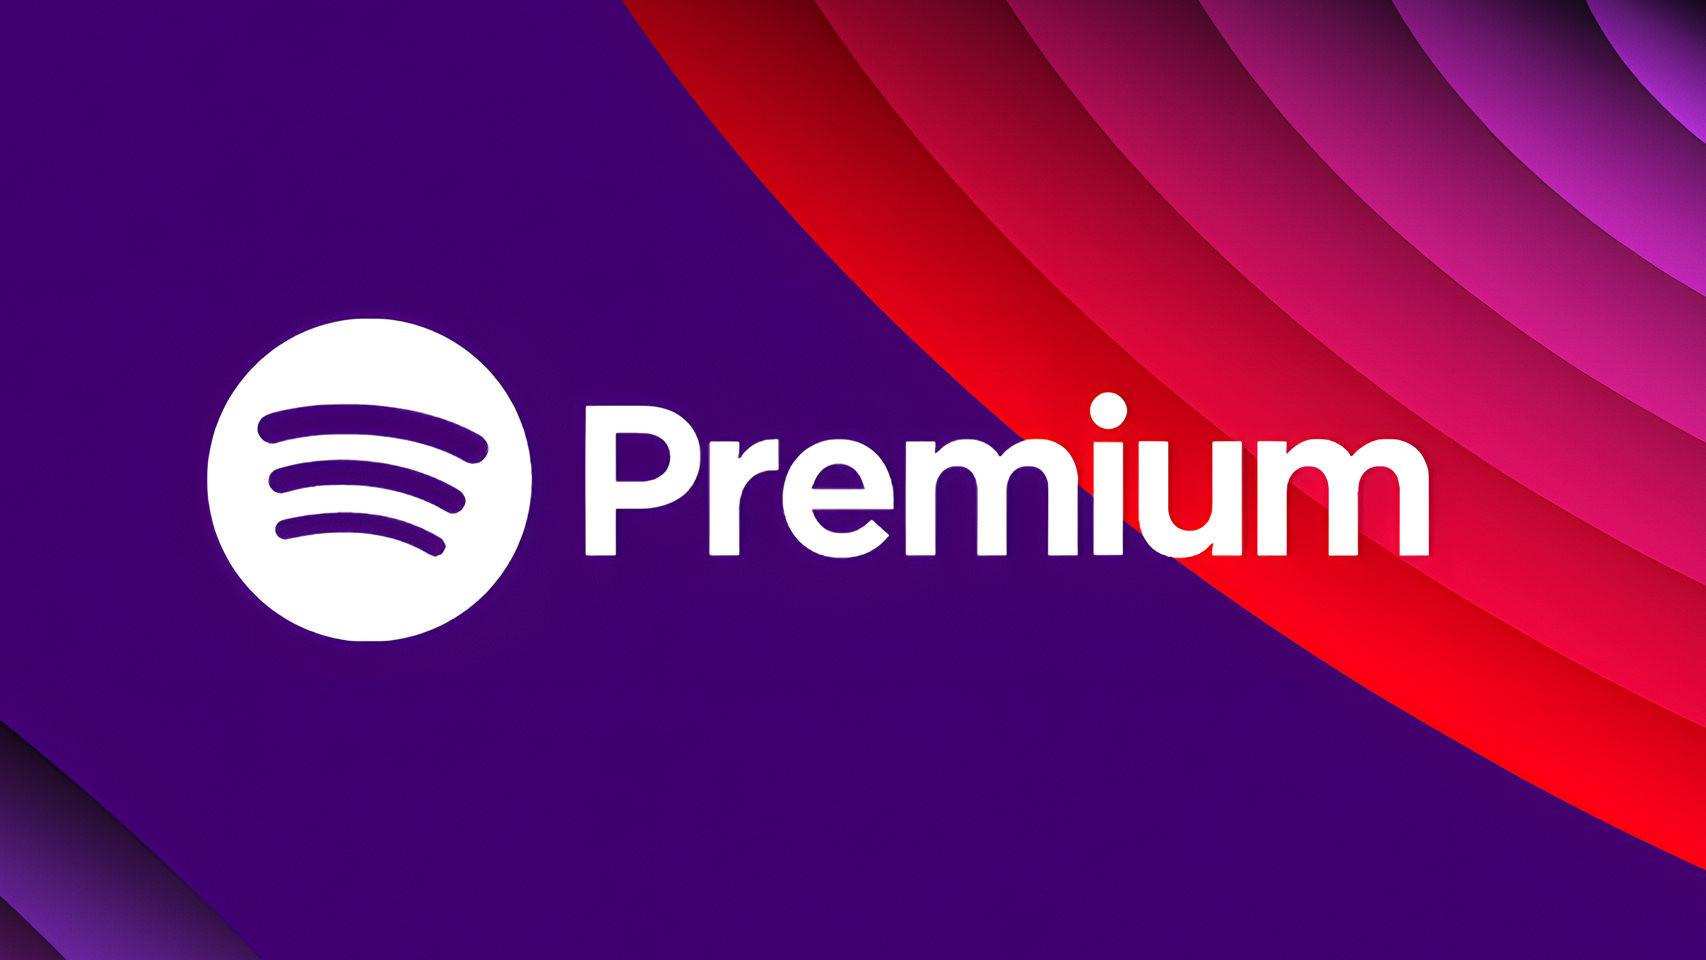 Spotify Premium gratis durante 3 meses: así puedes conseguir la nueva  promoción